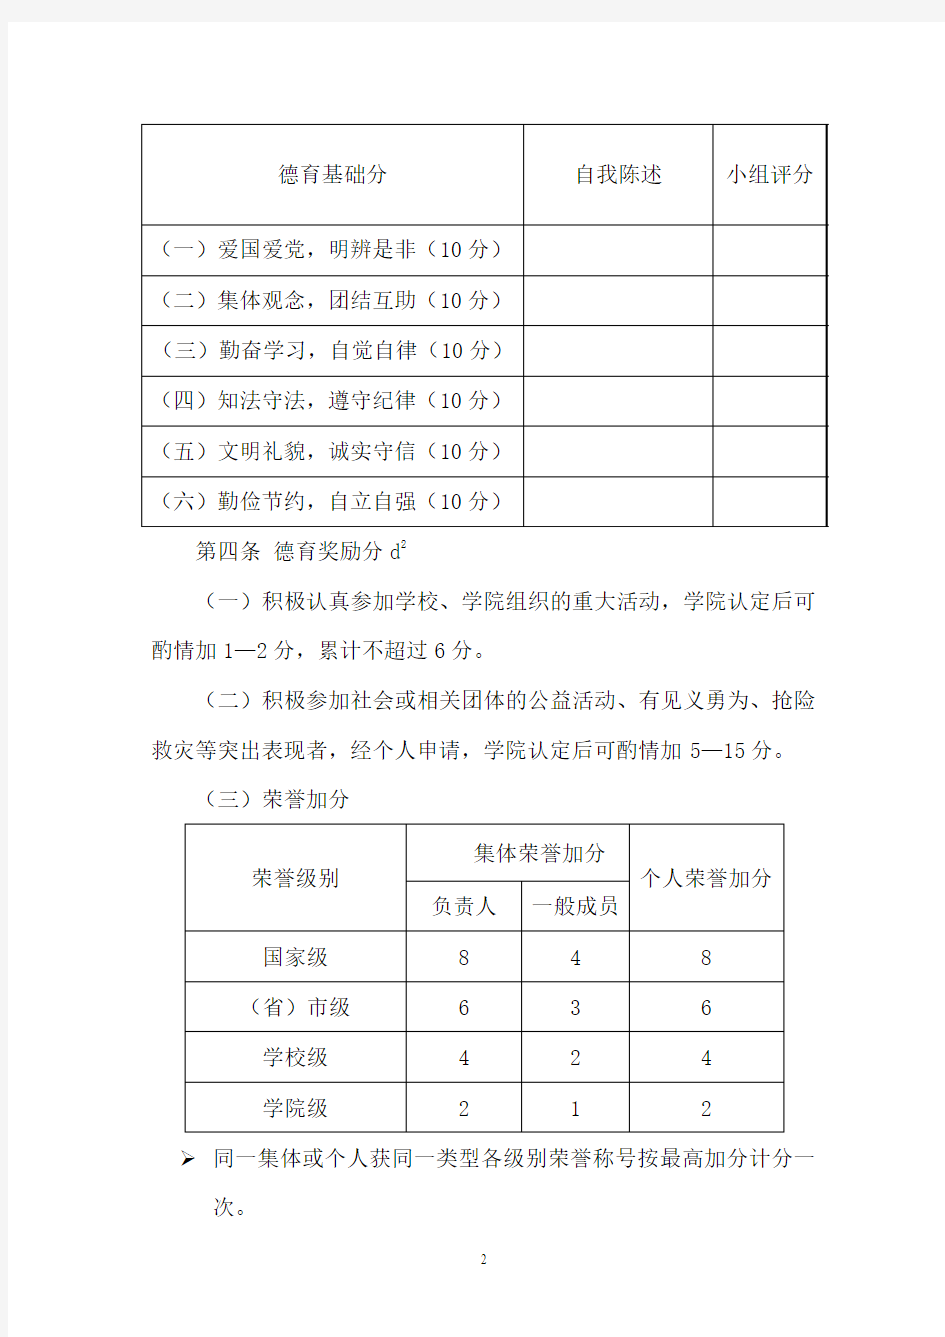 重庆大学本科学生综合素质测评办法(试行)